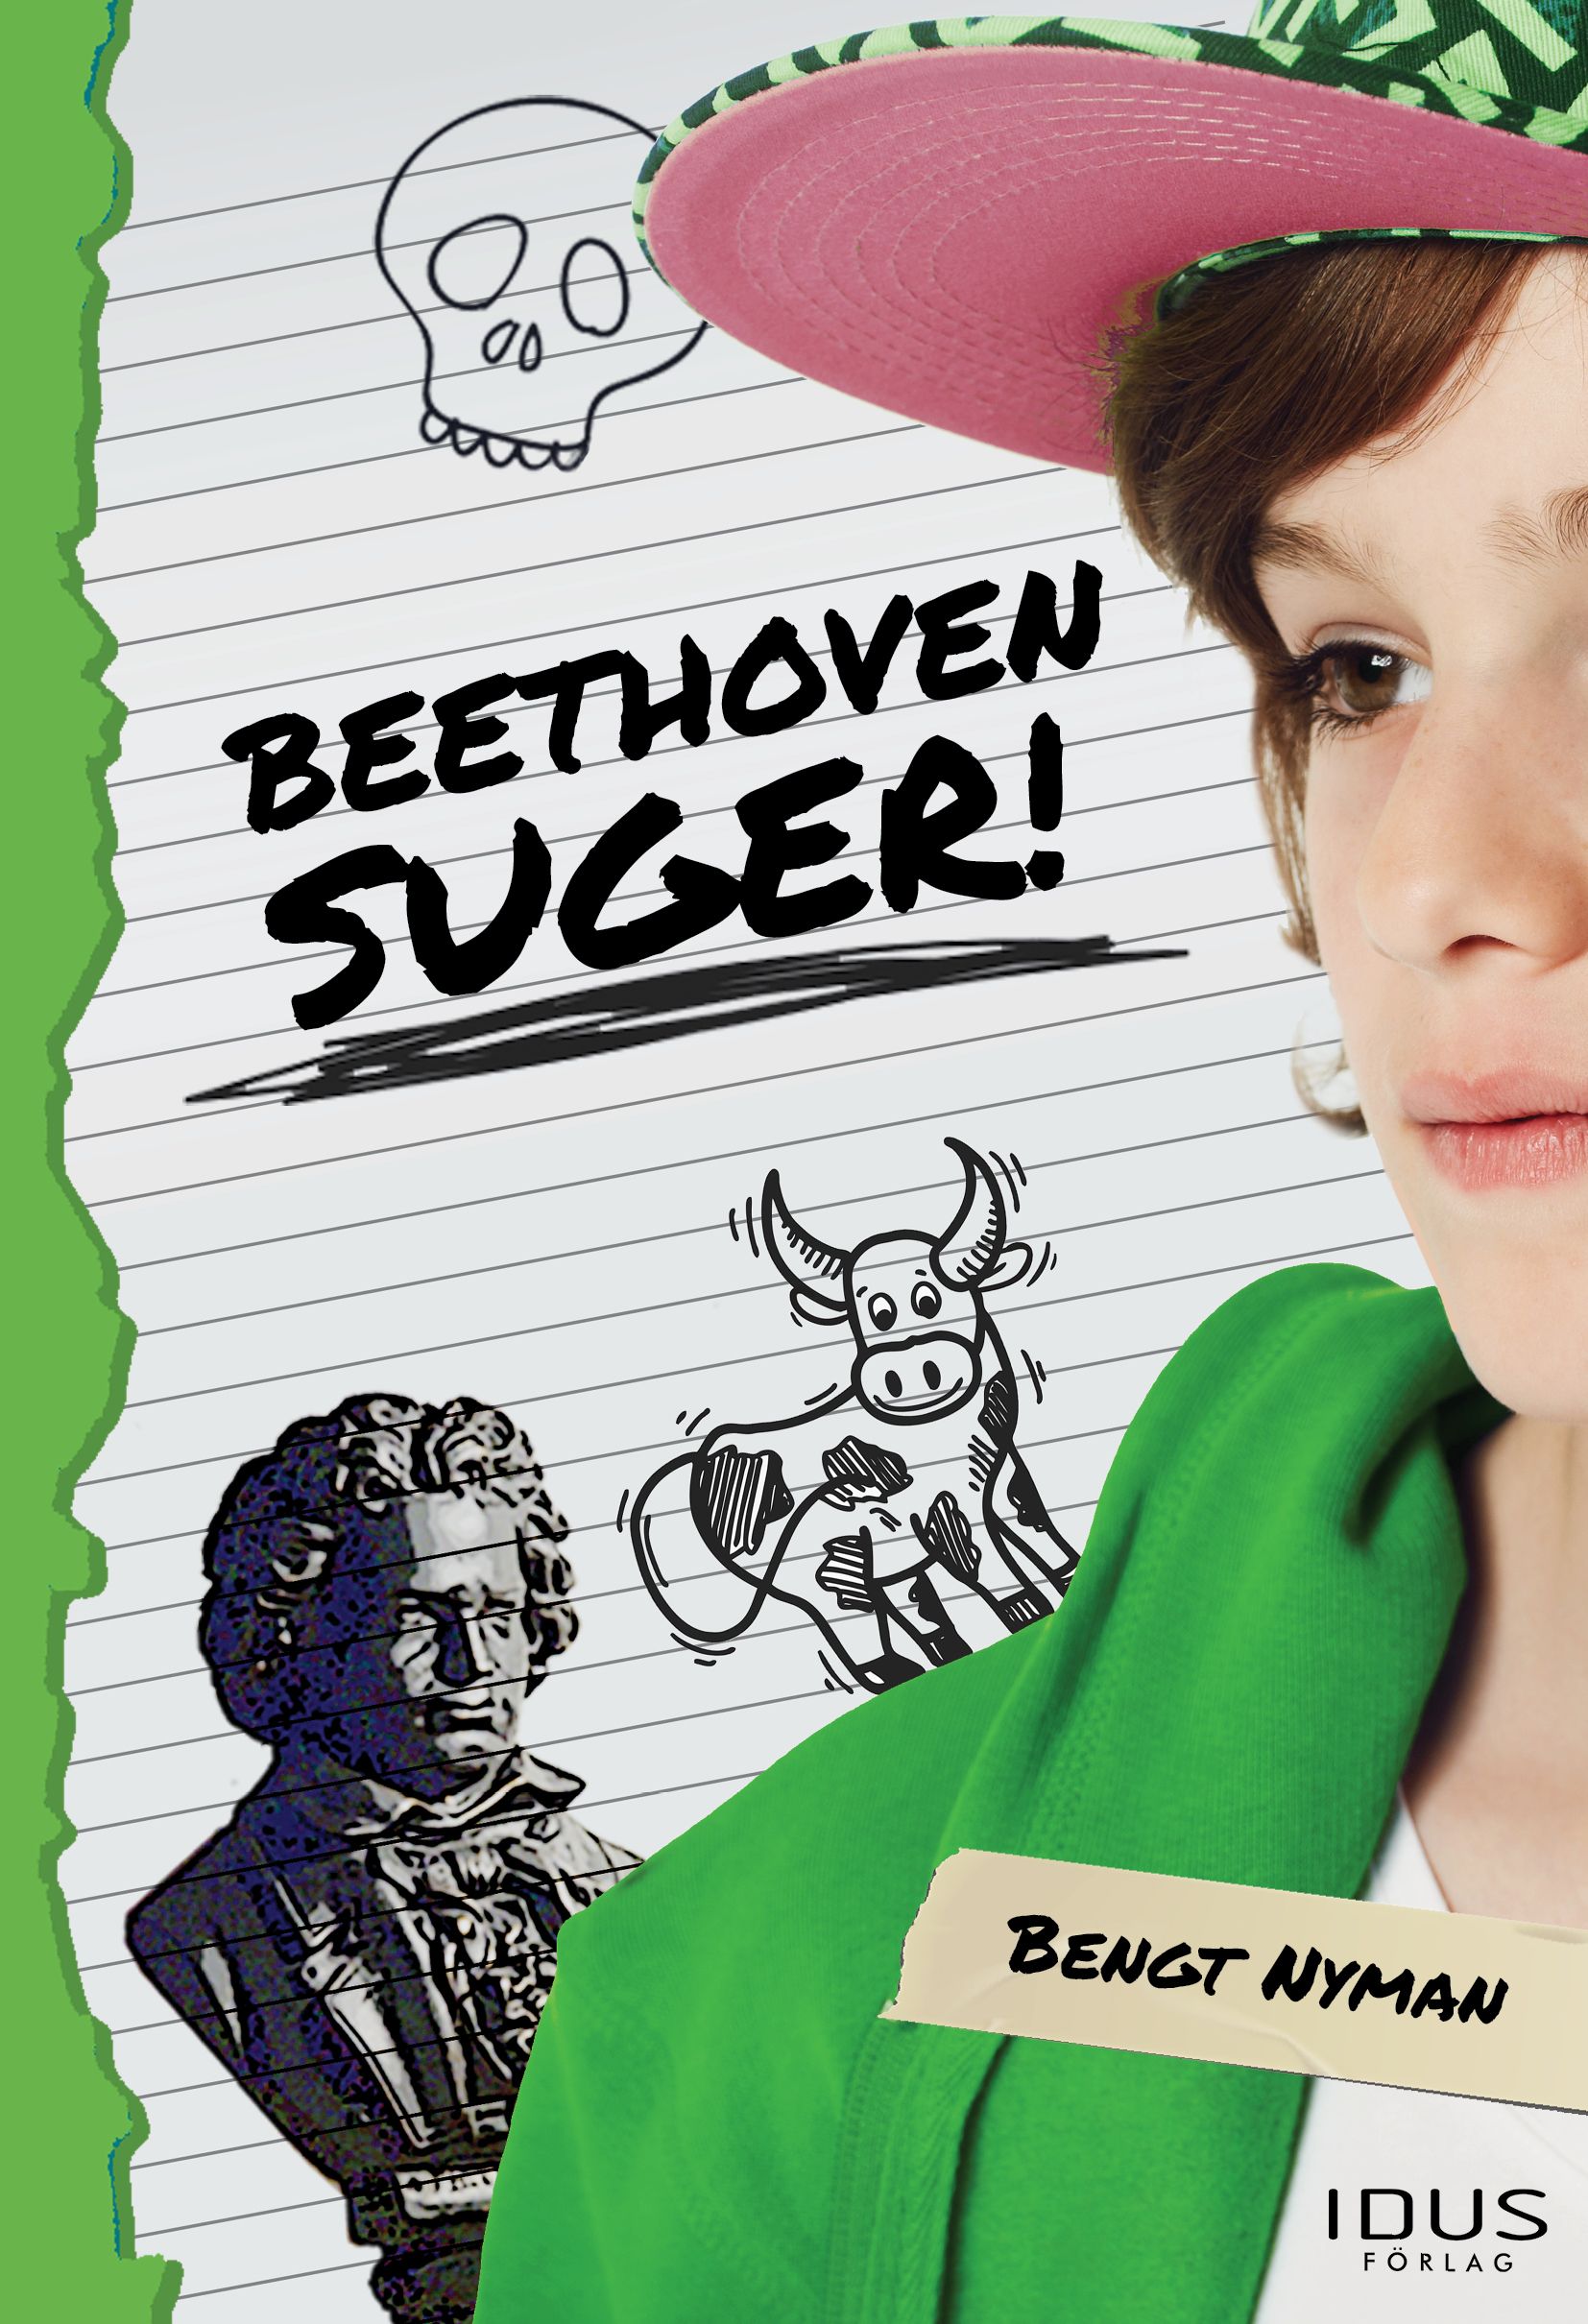 Beethoven suger!, e-bog af Bengt Nyman